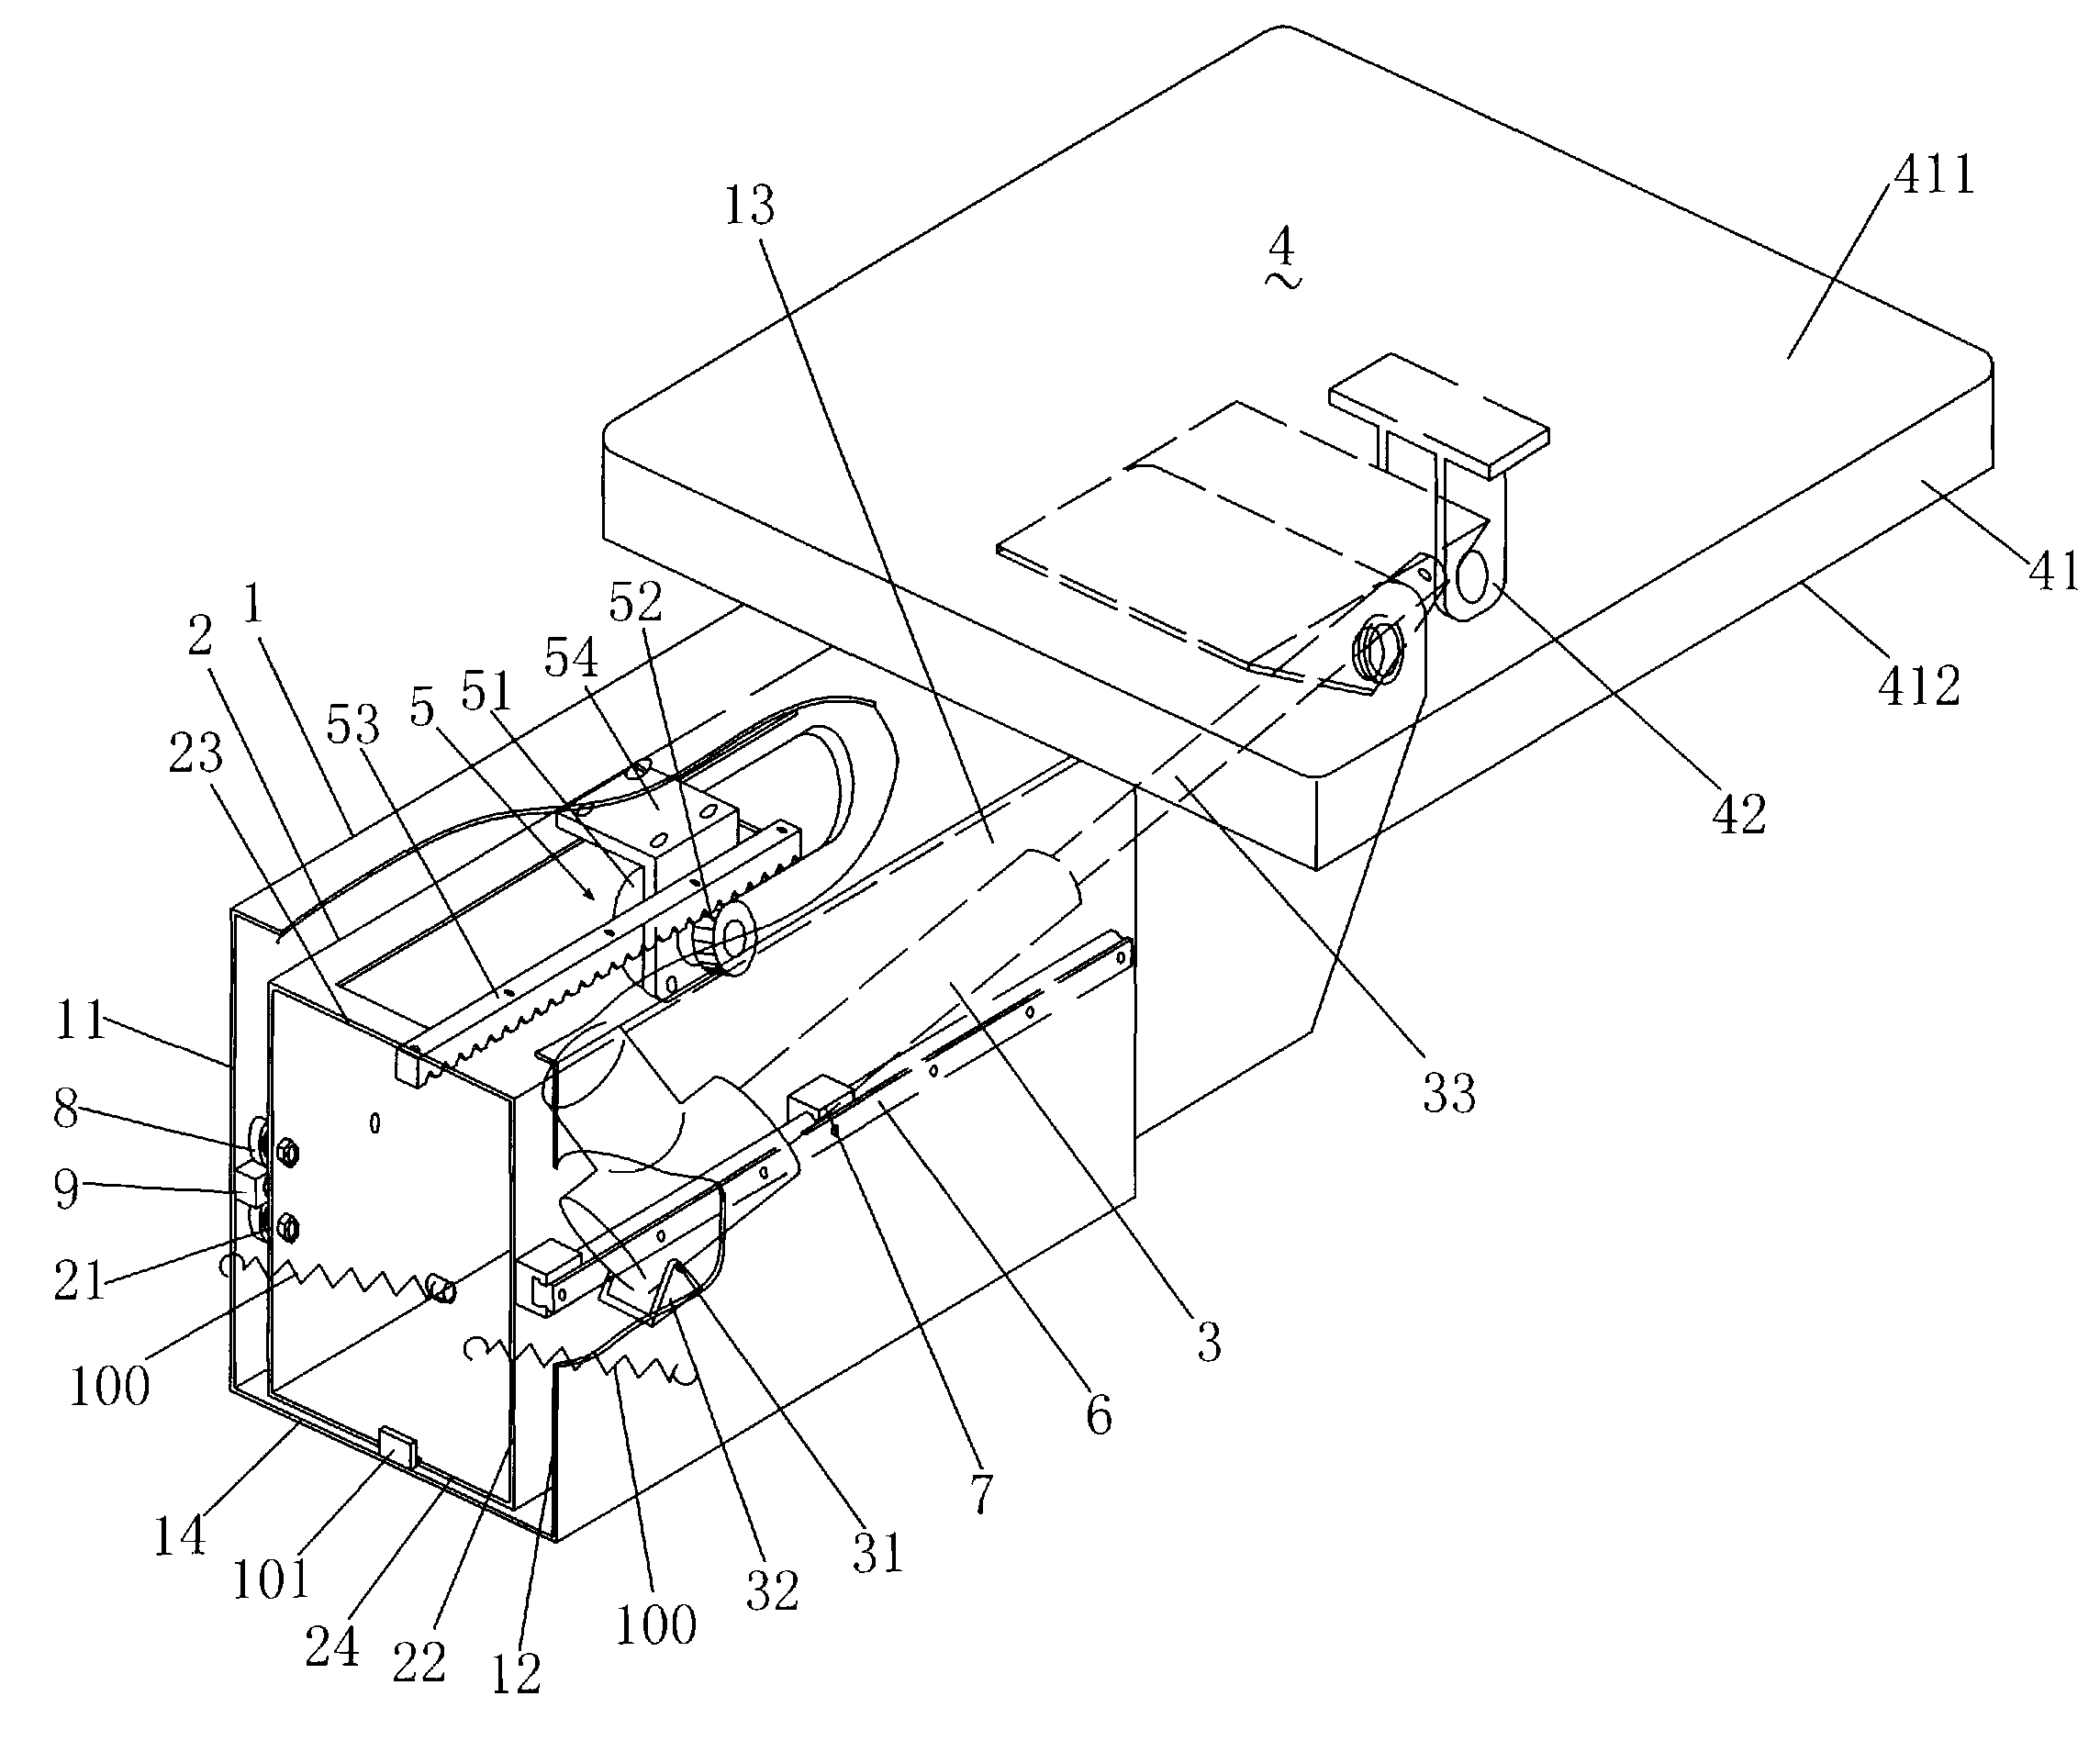 Platform telescoping mechanism